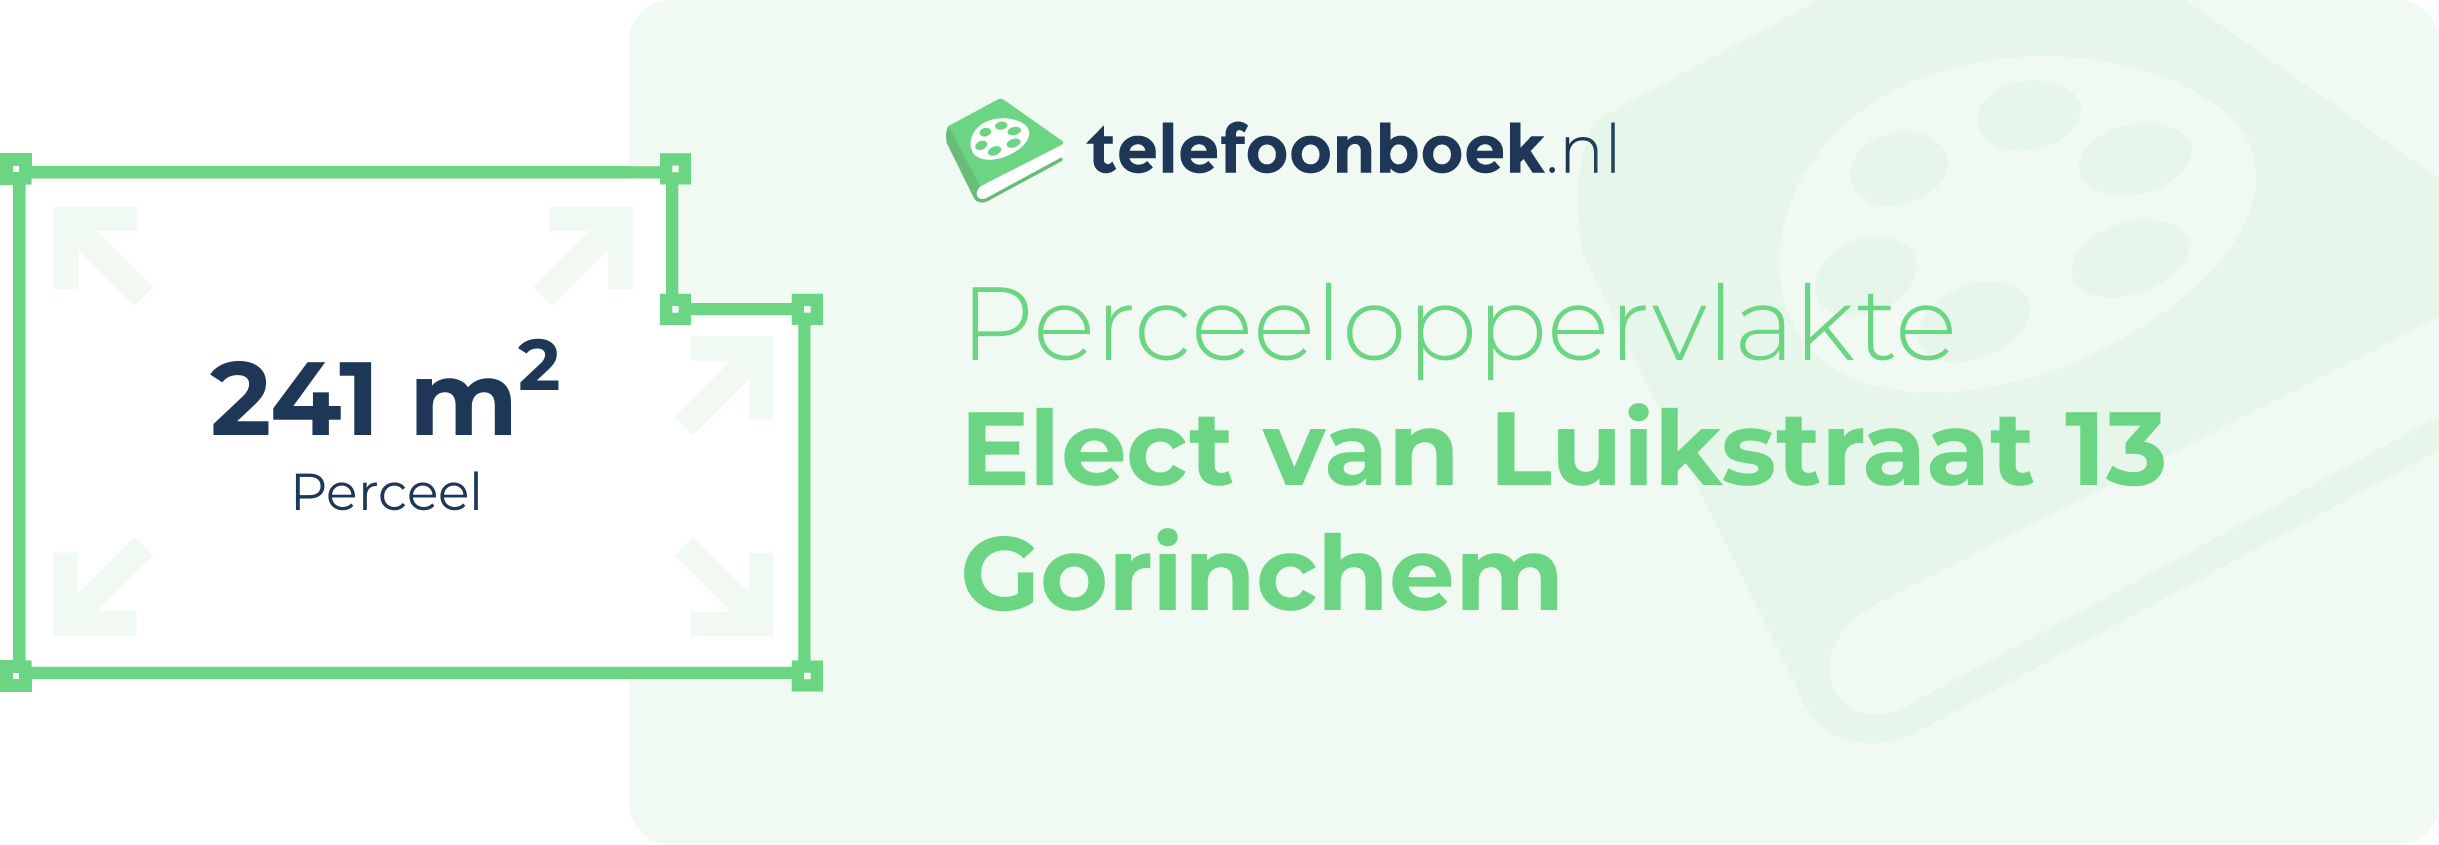 Perceeloppervlakte Elect Van Luikstraat 13 Gorinchem